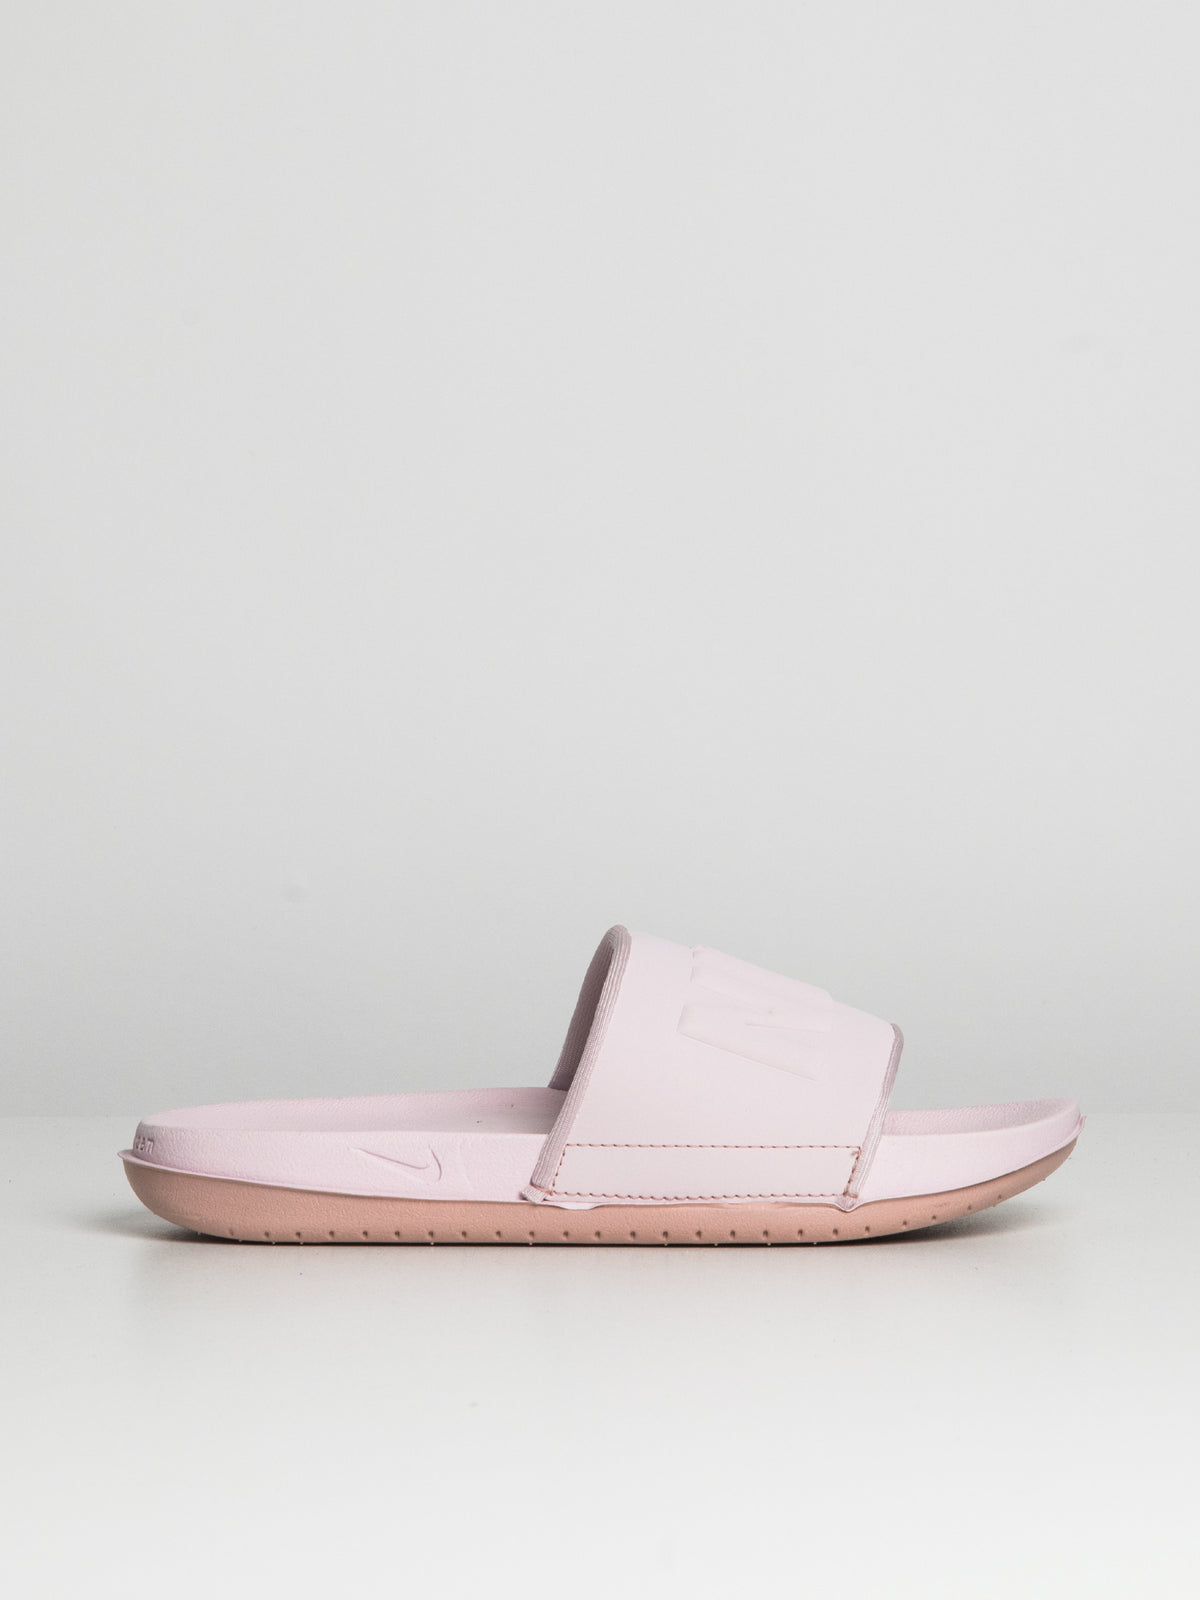 Nike Solid Pink Flip Flops Size 9 - 36% off